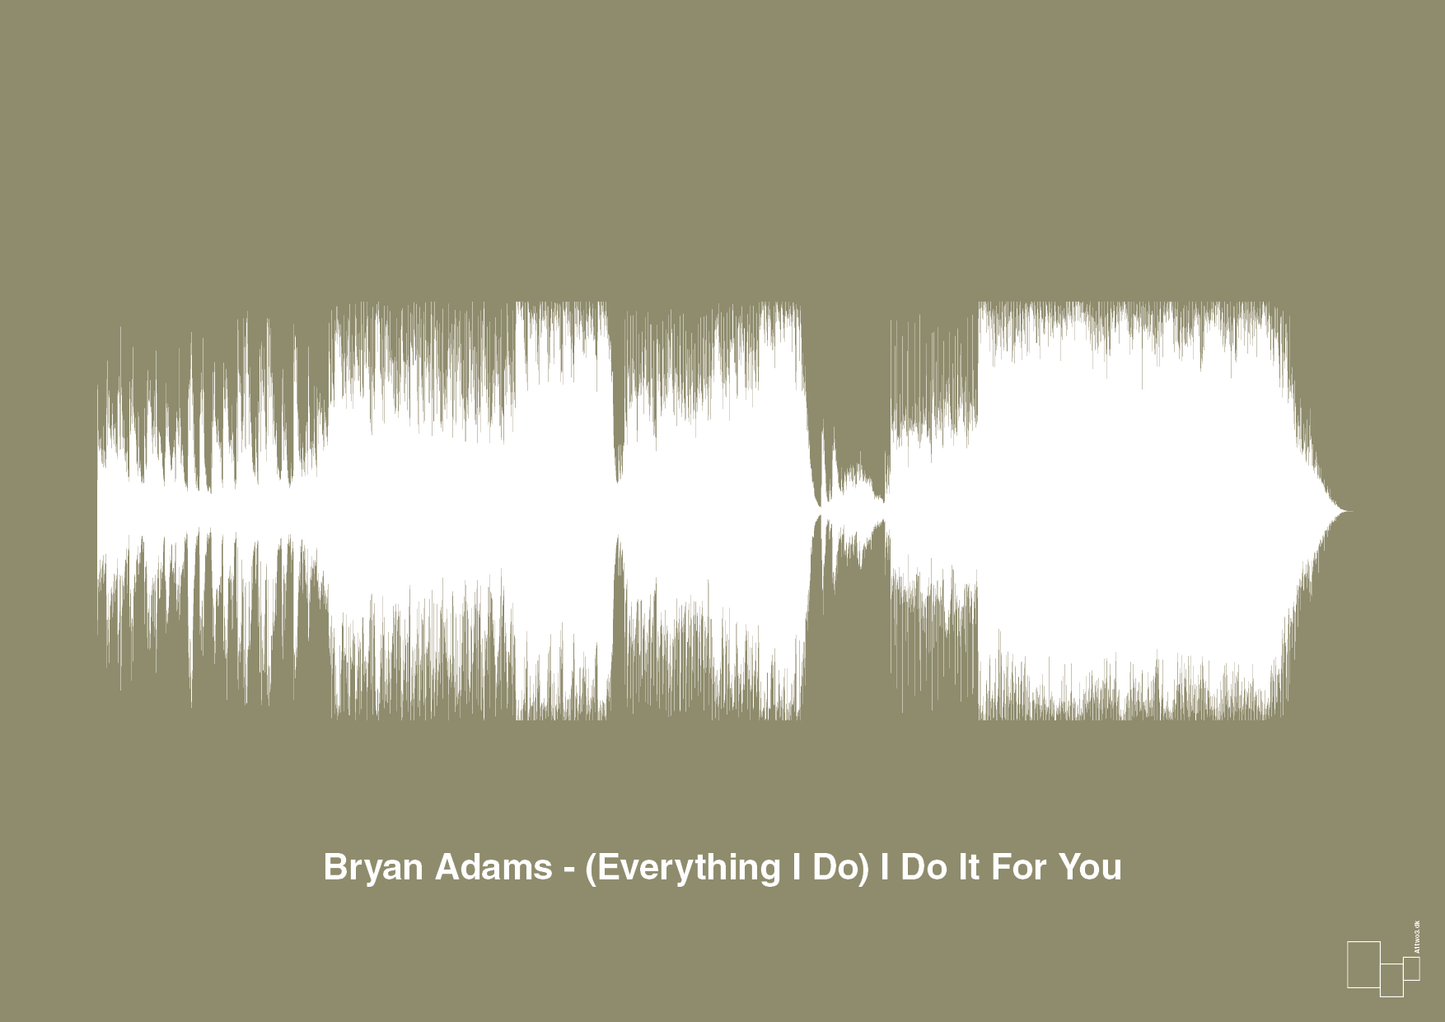 bryan adams - (everything i do) i do it for you - Plakat med Musik i Misty Forrest